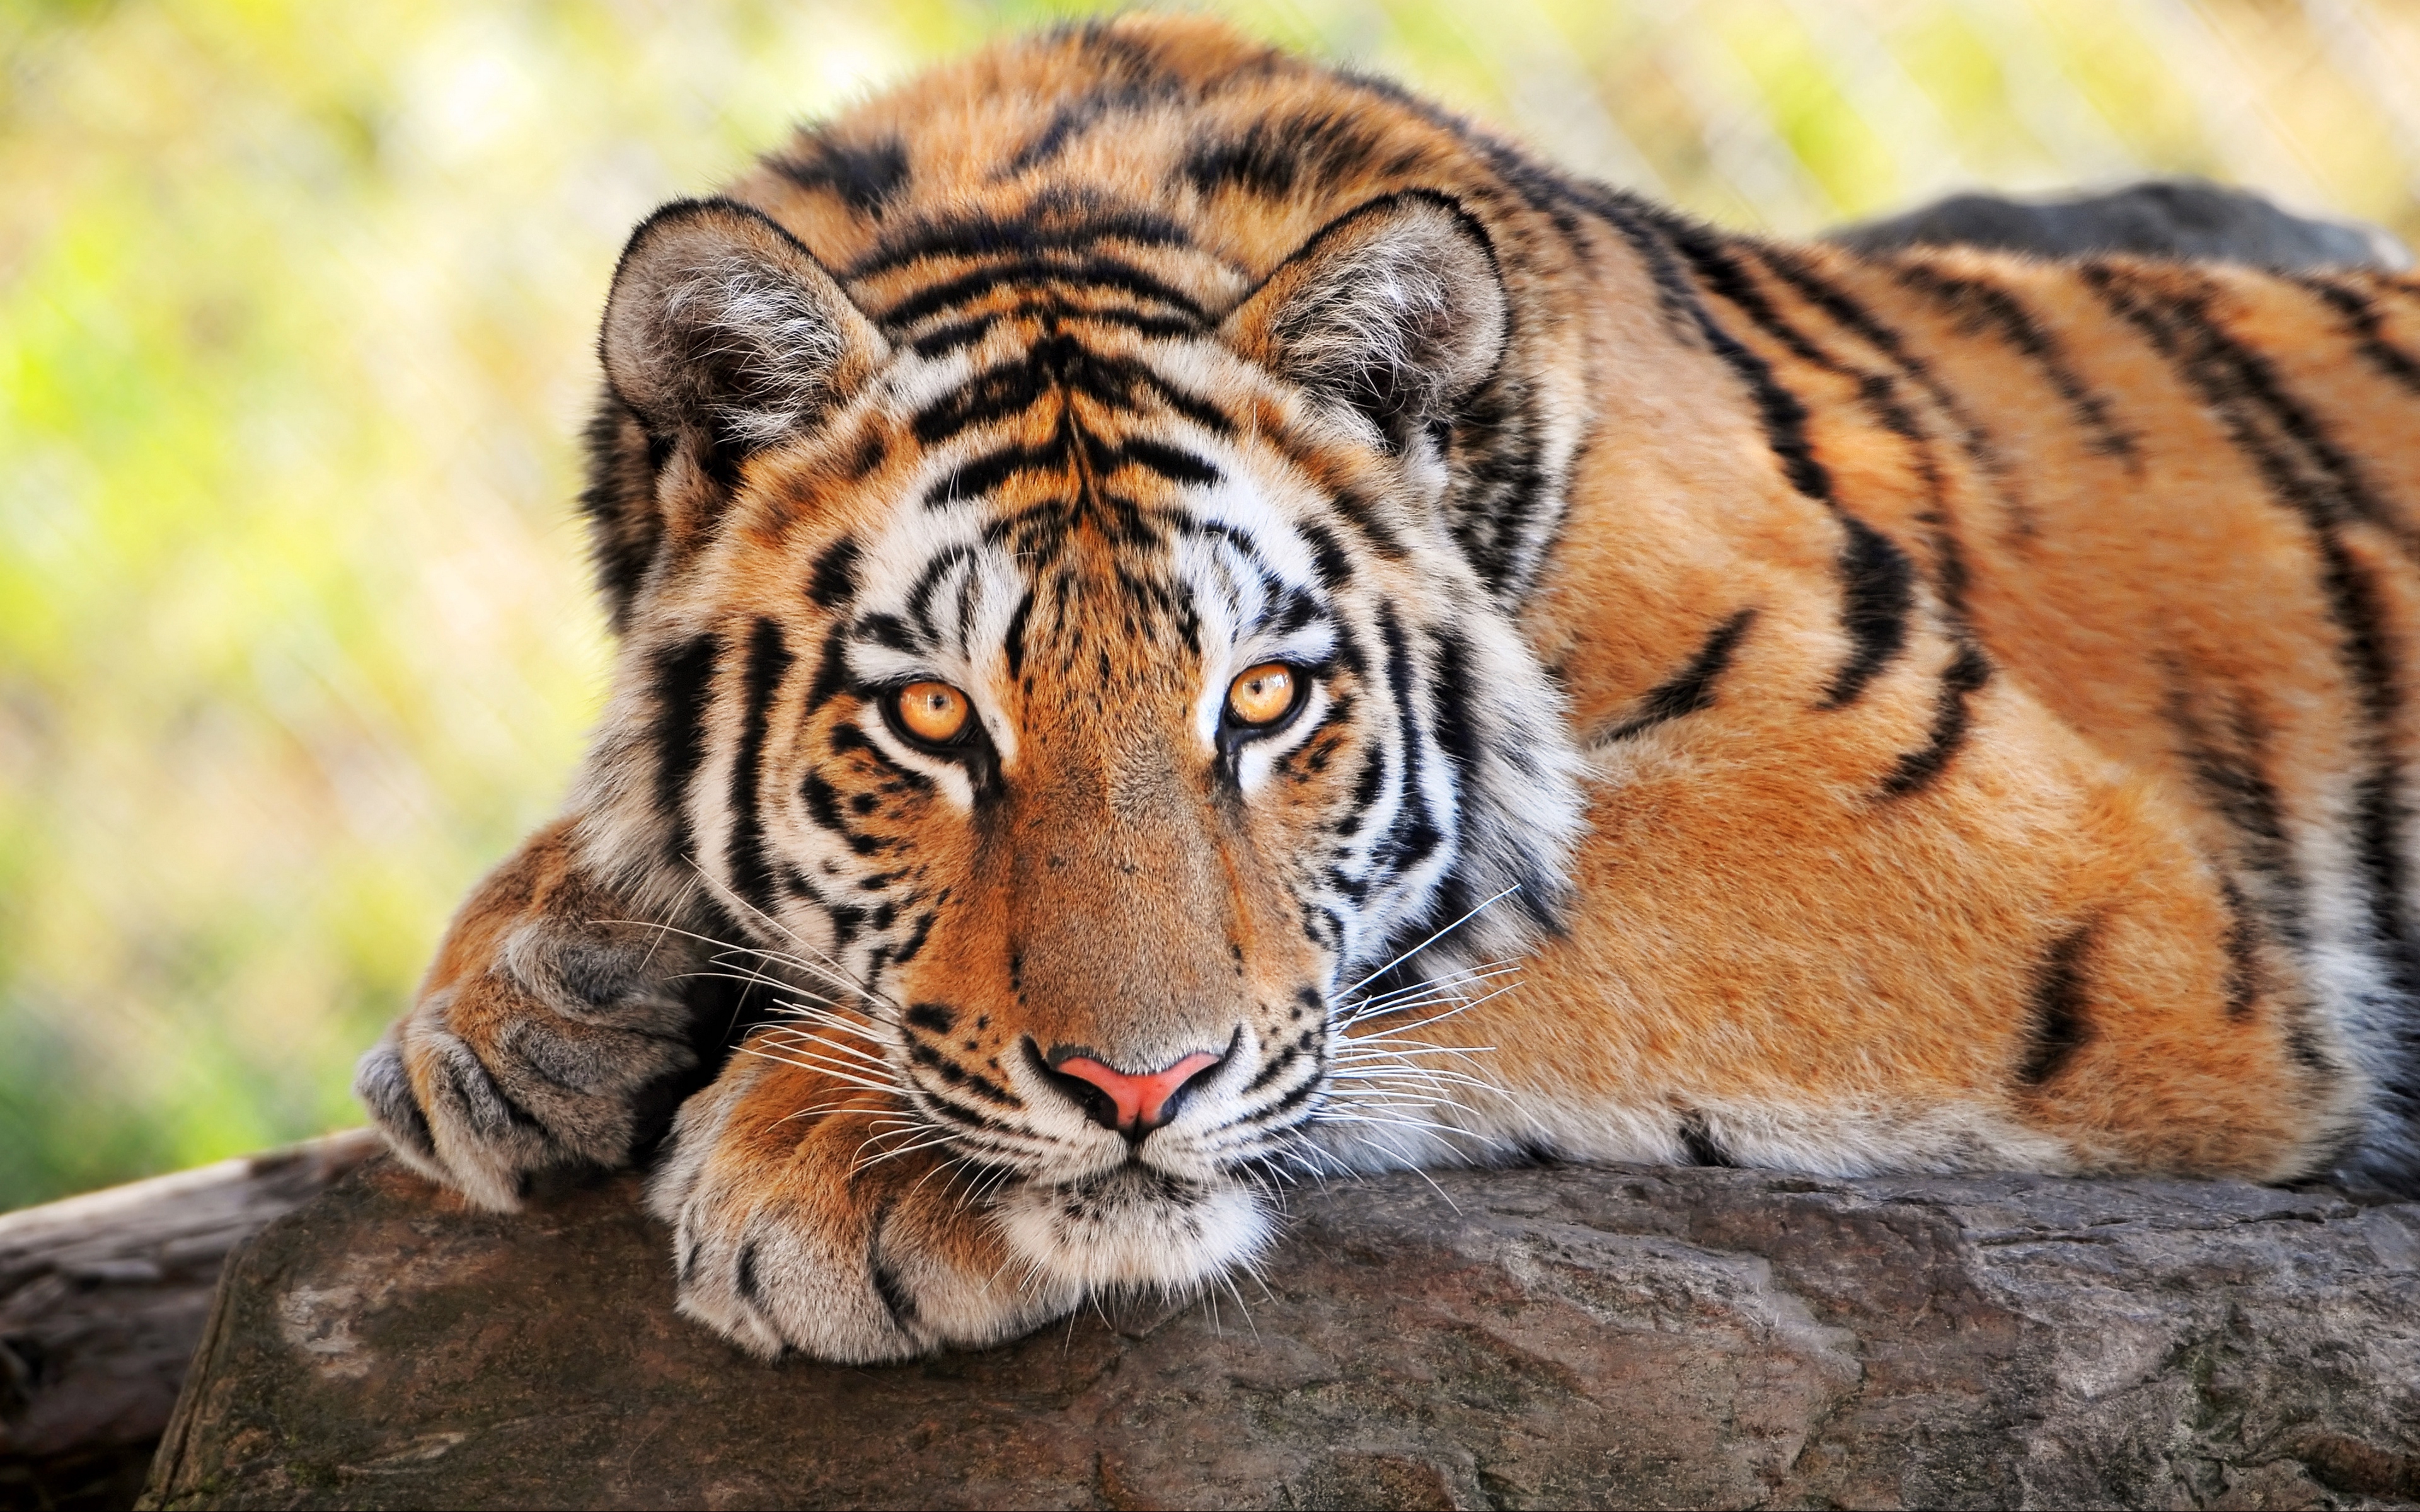 tiger hd wallpaper,tiger,wildlife,mammal,terrestrial animal,vertebrate